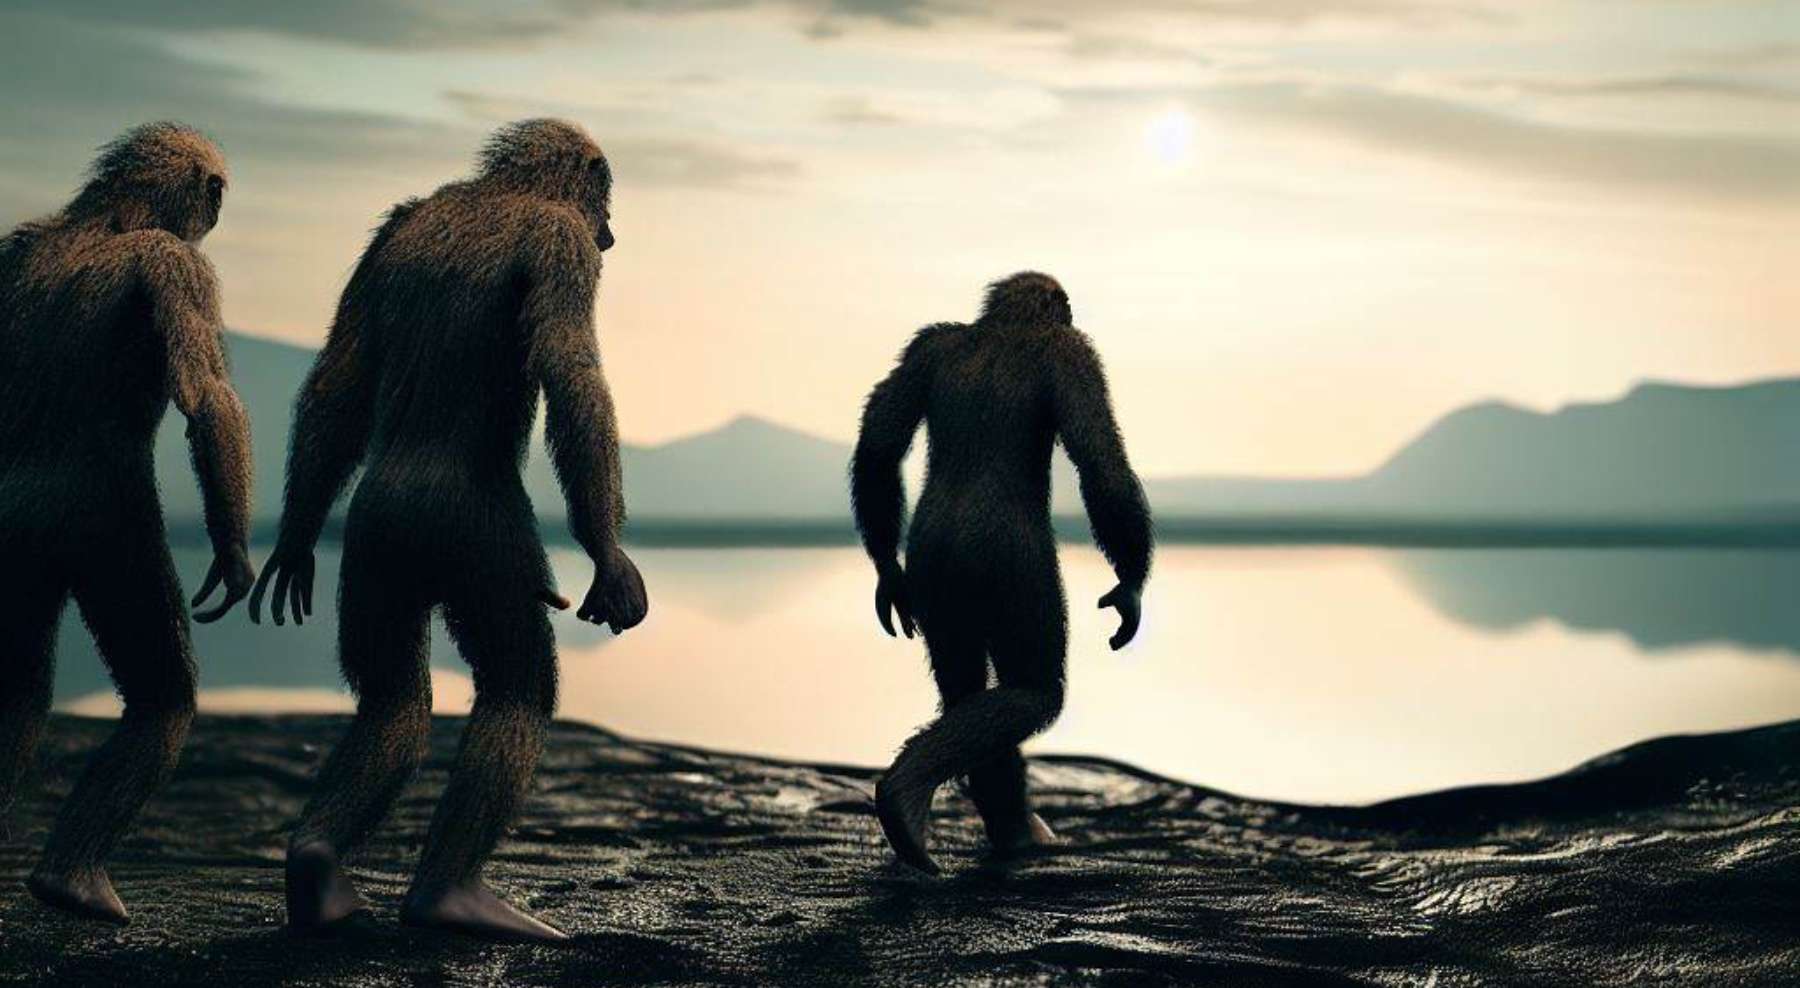 Une espèce humaine disparue a marché à cet endroit avec des mammifères géants il y a 300 000 ans en Allemagne